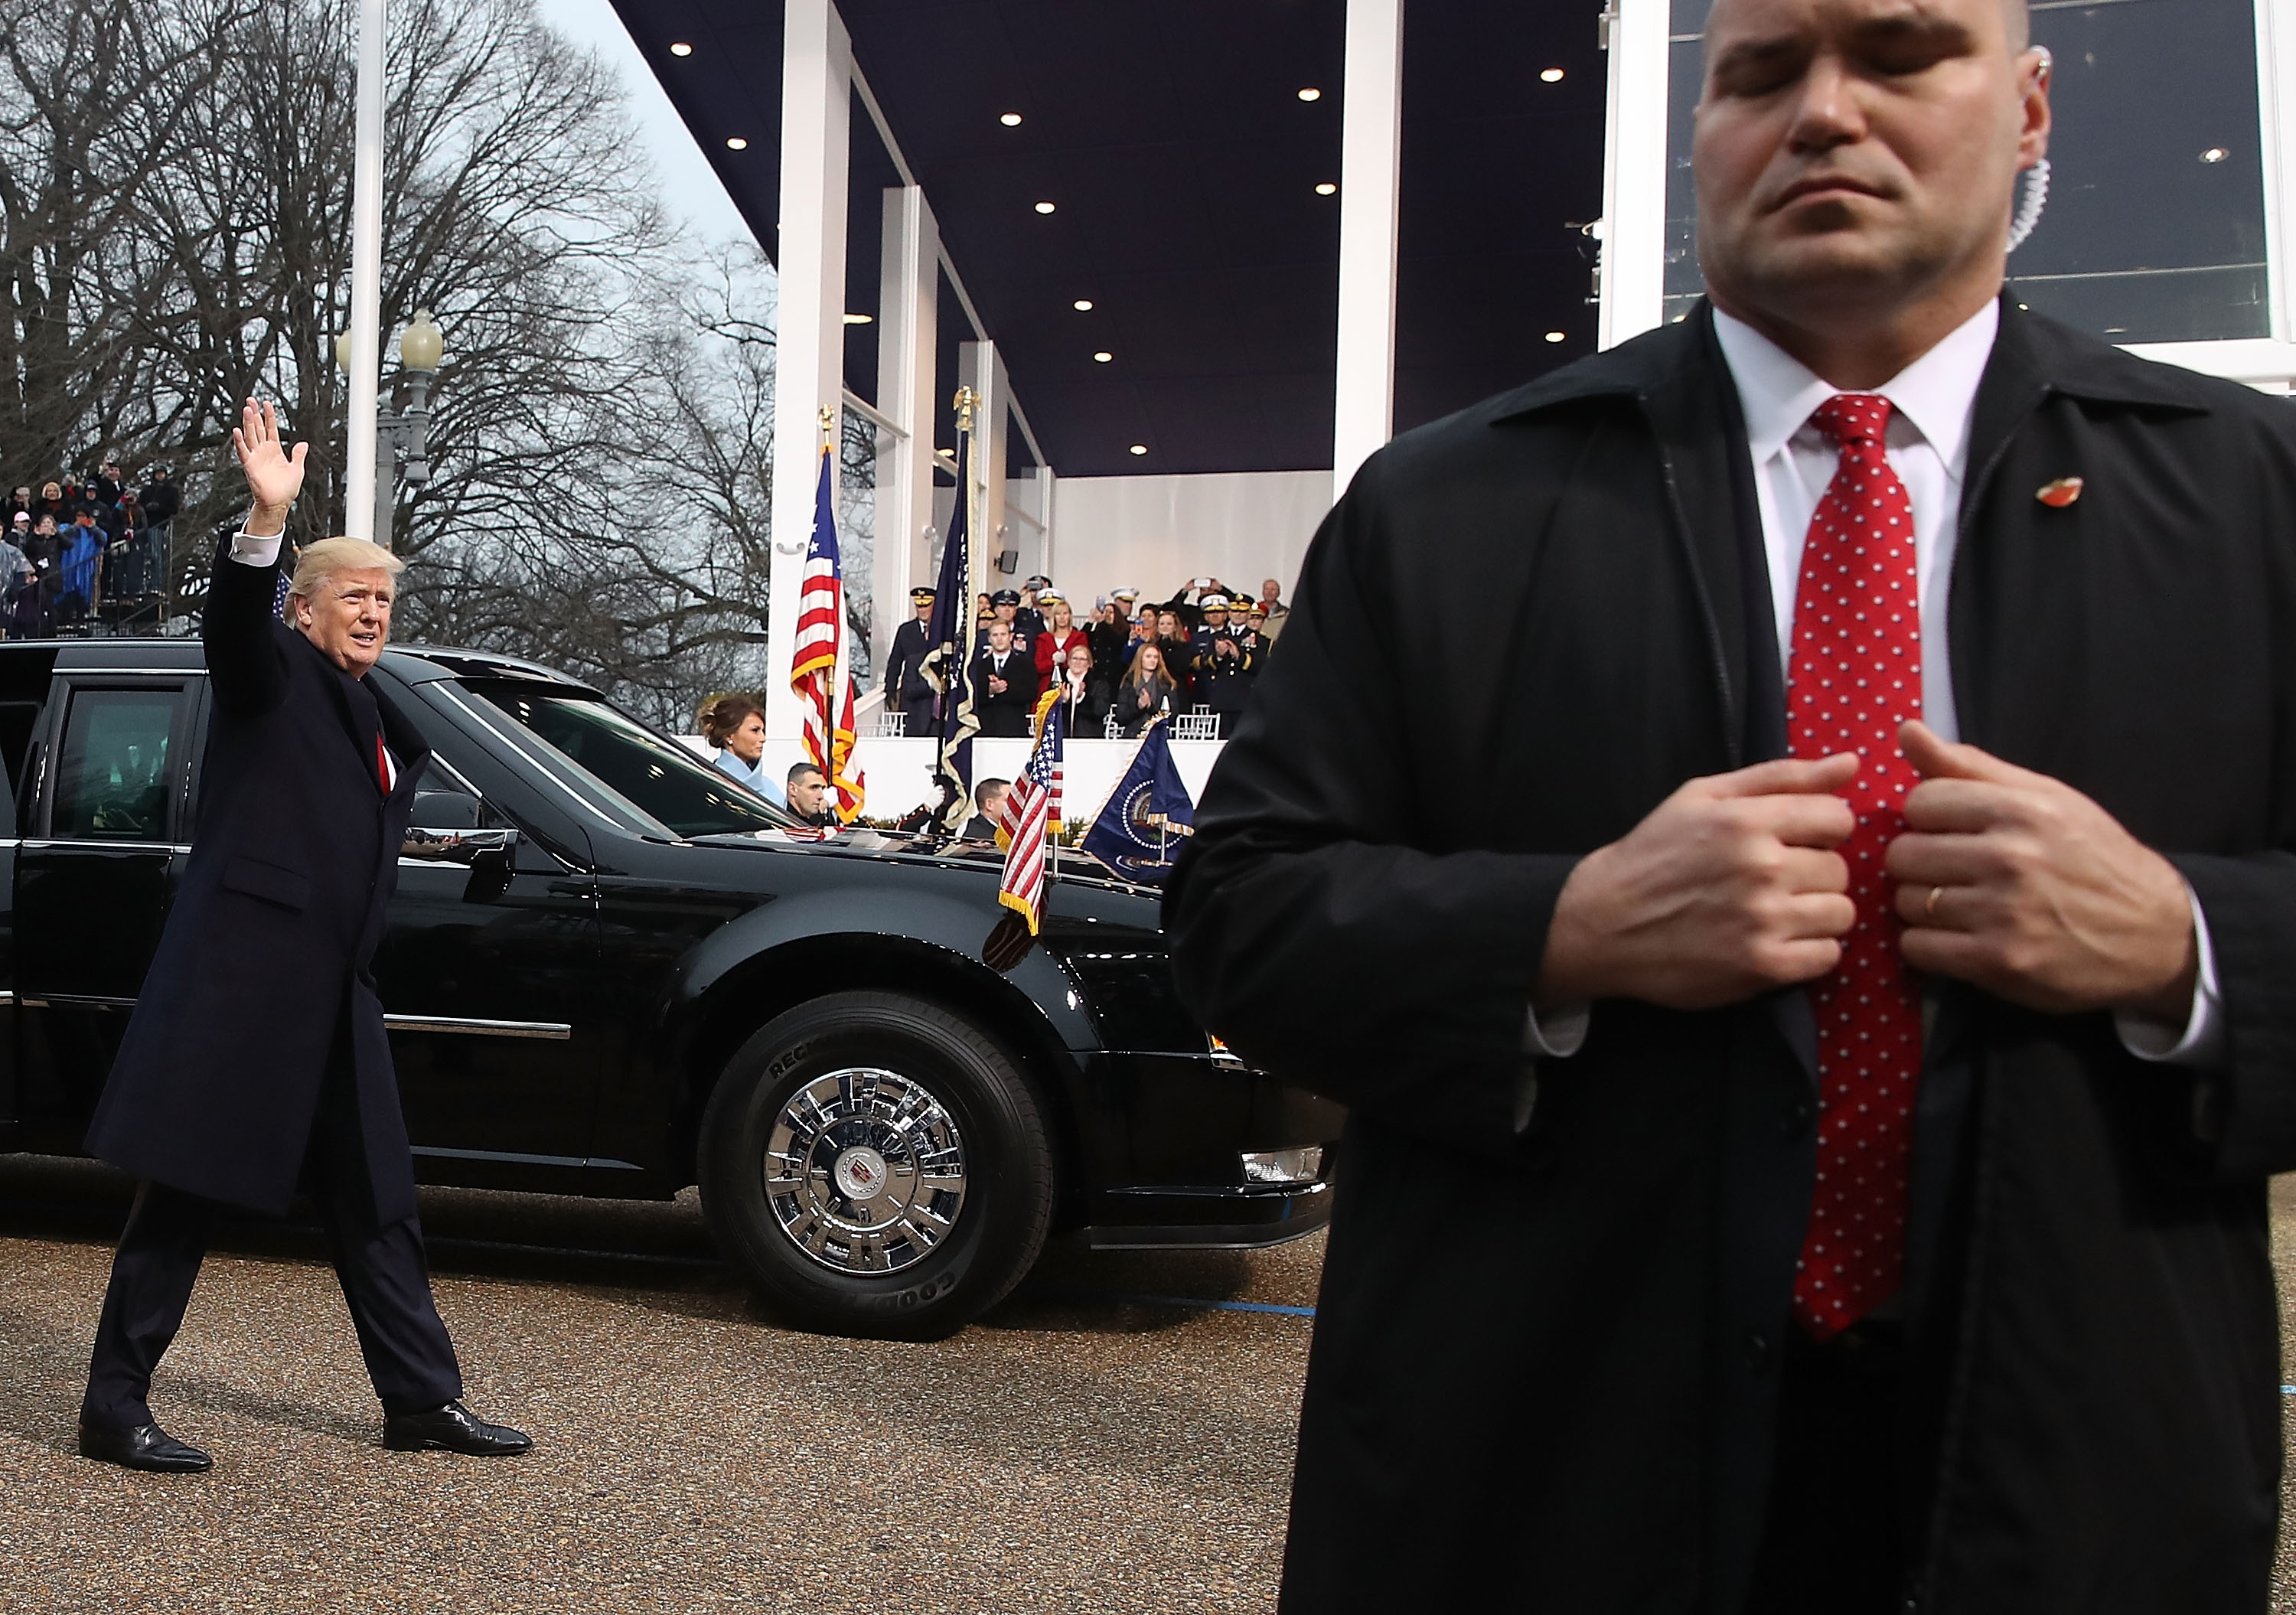 Cerca de la Casa Blanca, el presidente 45 de la nación saludó a algunos asistentes. FOTO: MARK WILSON / GETTY IMAGES